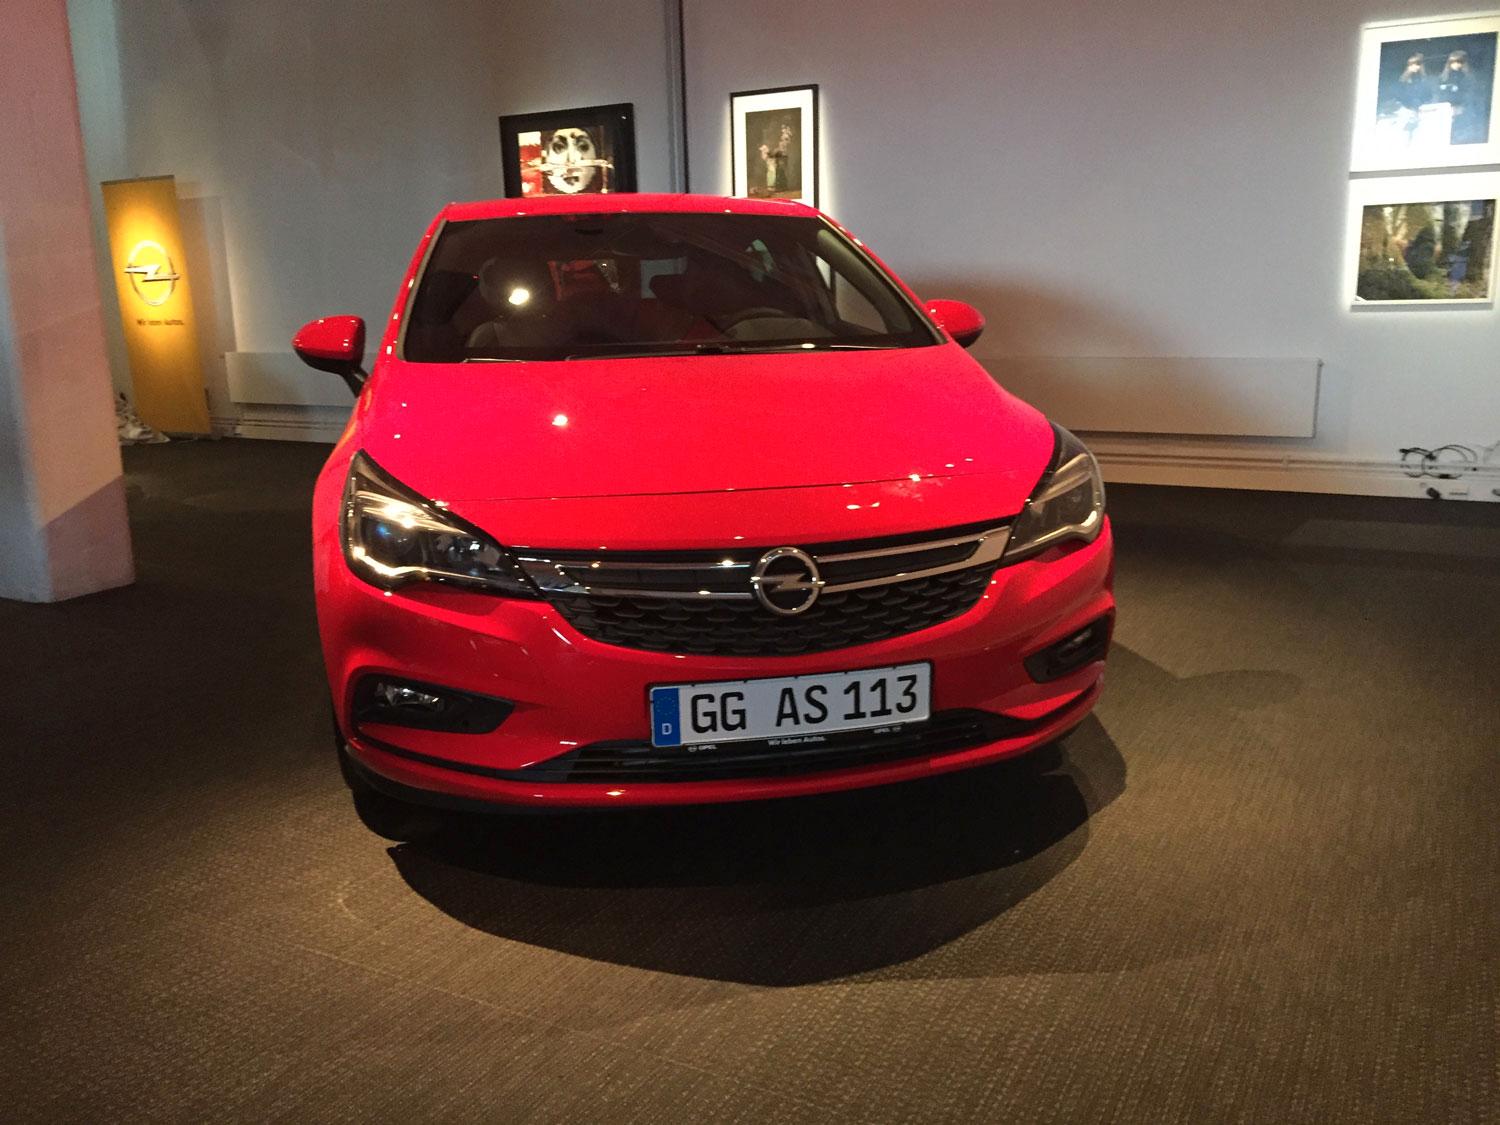 Allt med nya Astran är nytt. Enligt Opel delar bilen endast namnet med den tidigare generationen.